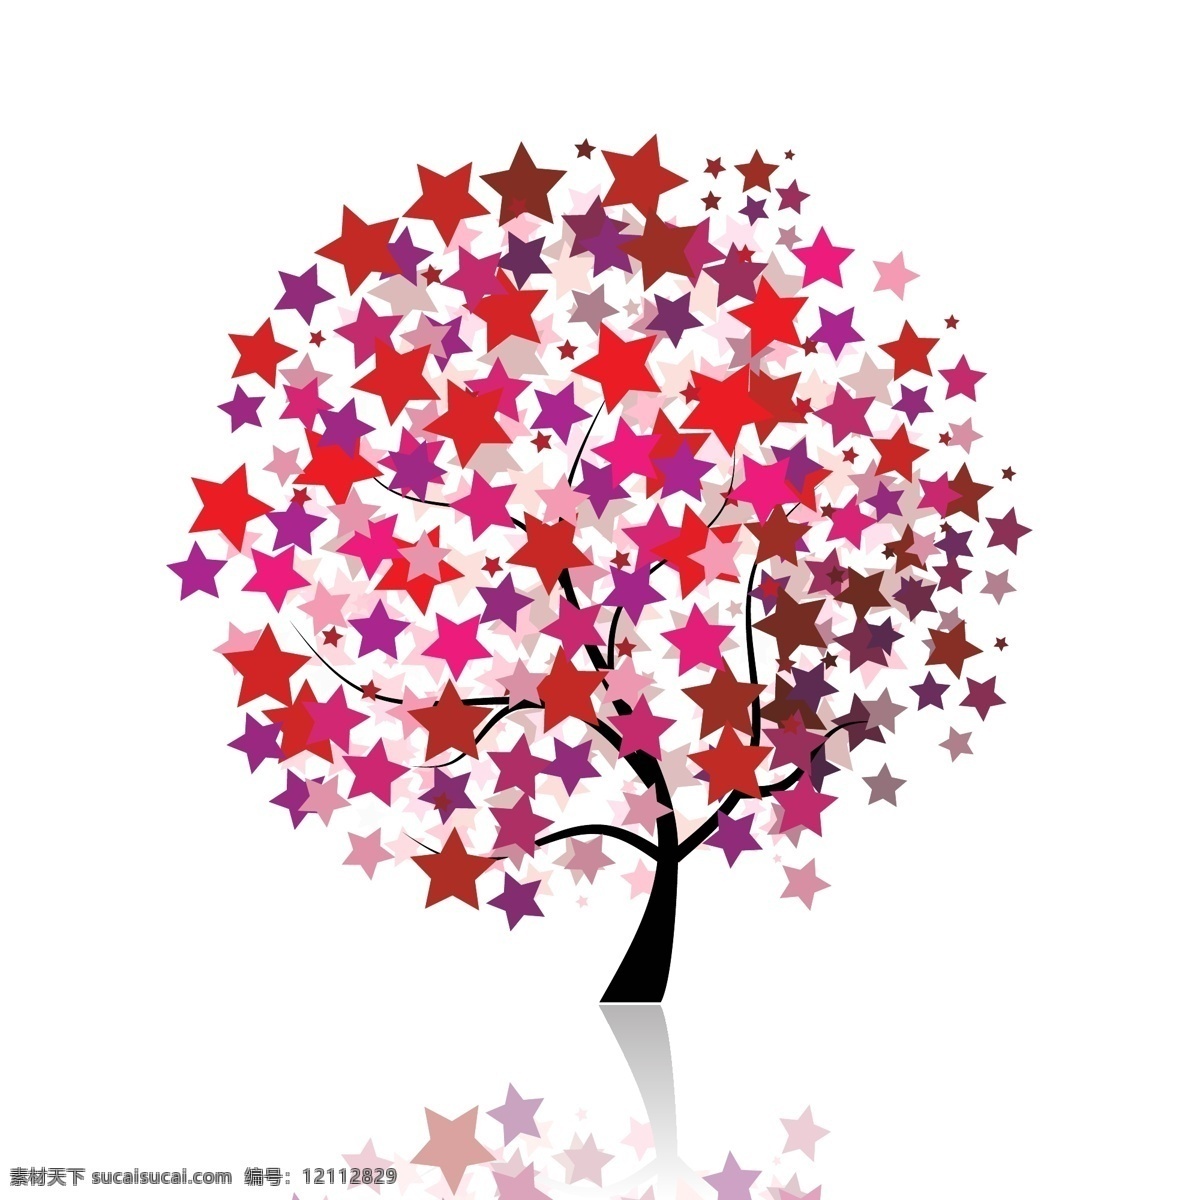 树免费下载 星形 树 　 红星 大树 矢量图 花纹花边